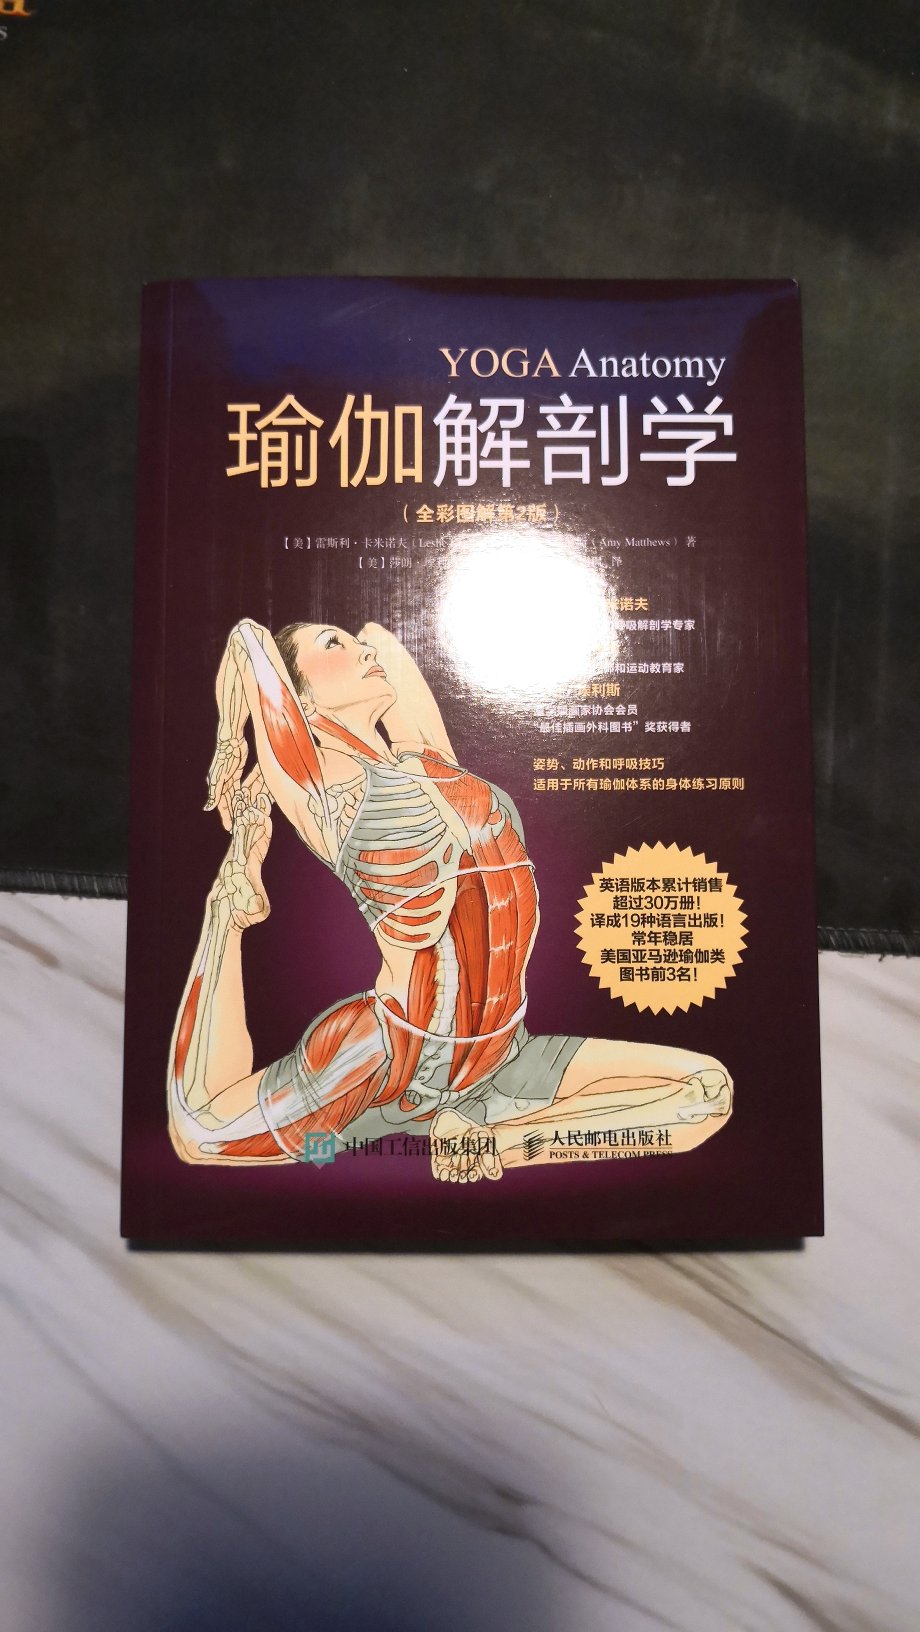 练习瑜伽，或是拉伸动作准确很重要，这本书有图解，对于做动作很有帮助。